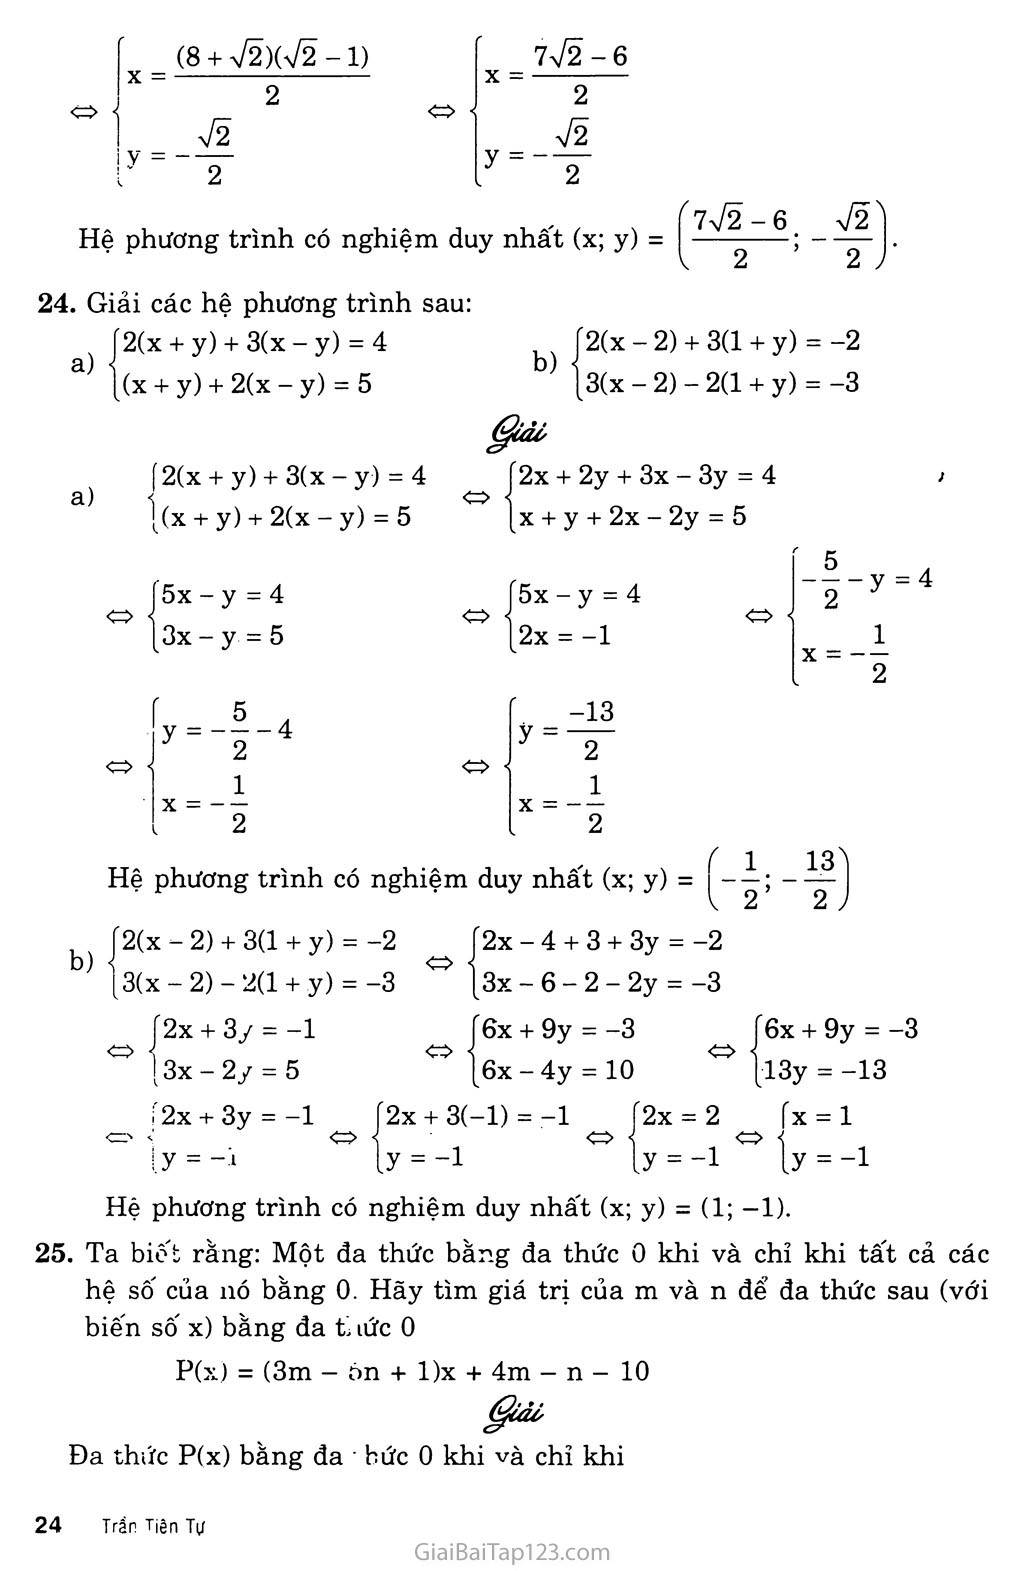 Bài 4. Giải hệ phương trình bằng phương pháp cộng đại số trang 5